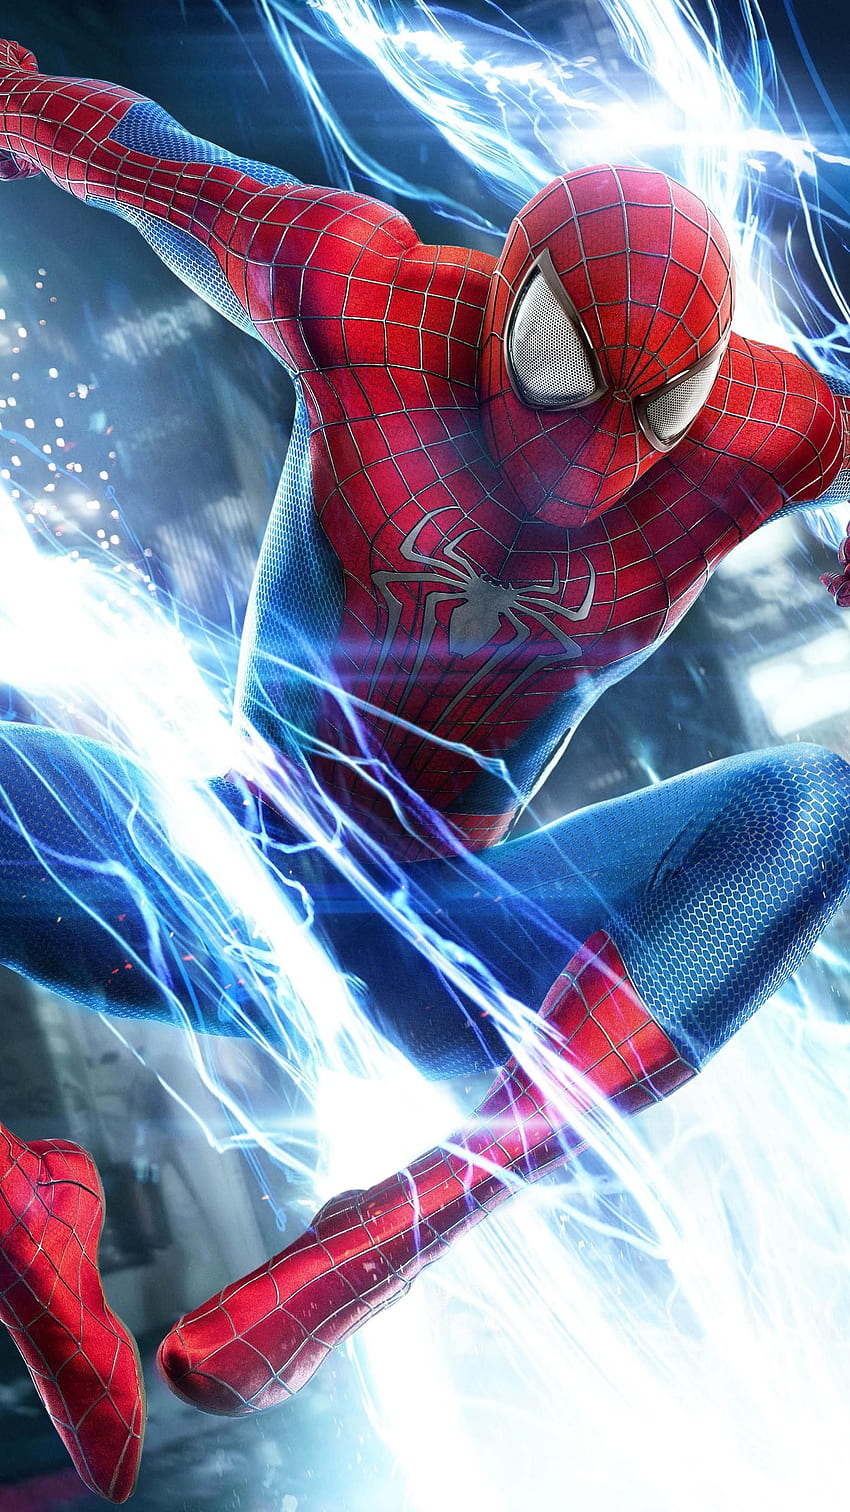 El Sorprendente Hombre Araña 2 (2014) Teléfono. Cinemanía. Obra de arte de Spiderman, Amazing Spiderman Movie, Marvel Spiderman Art, Spider Man Amazing fondo de pantalla del teléfono